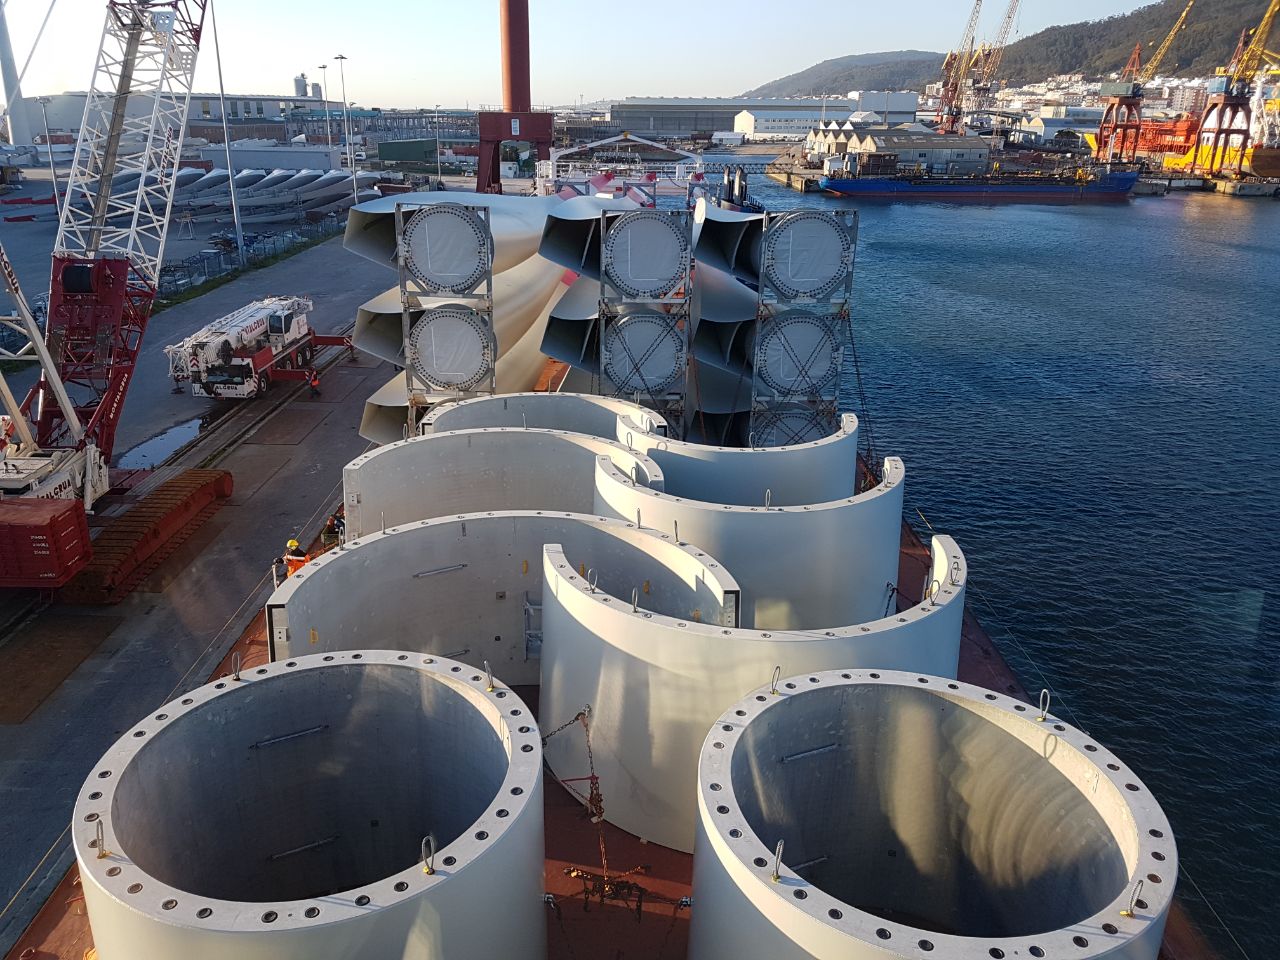 Turmsektionen und Flügel von Windkraftanlagen auf einem Schiff im Hafen